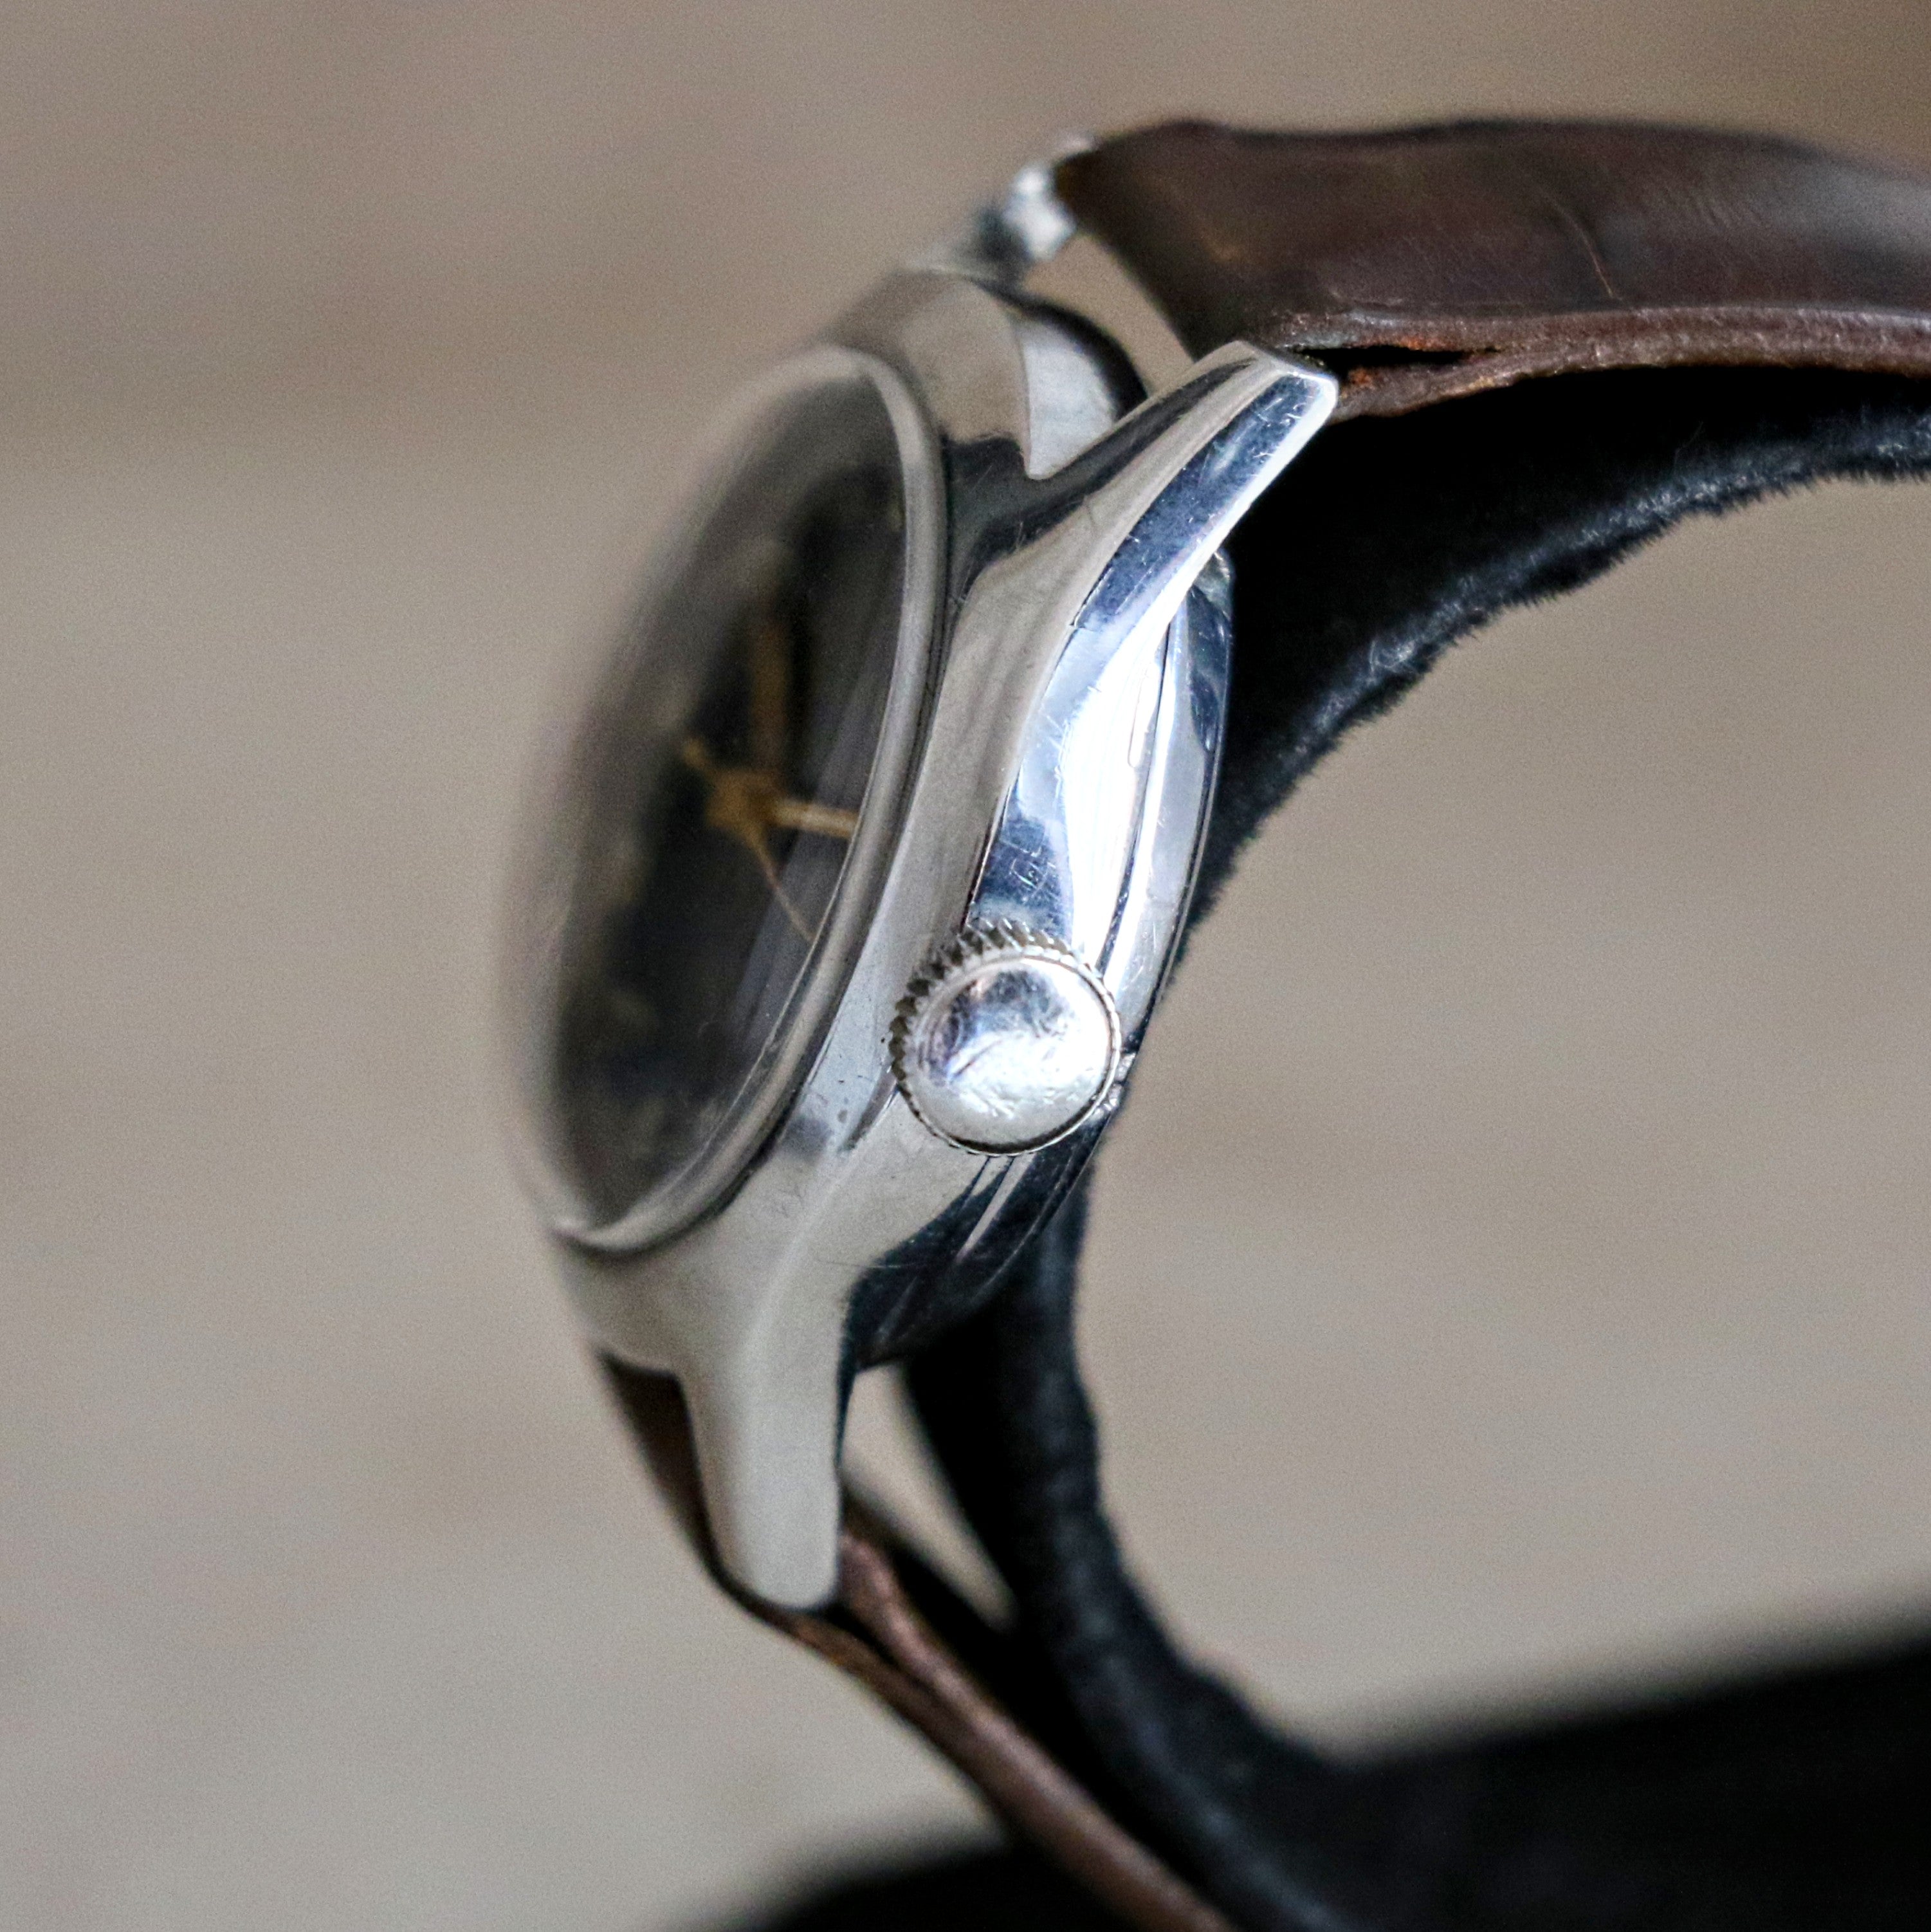 RENSIE Bumper Automatic Wristwatch by A. Raymond LTD. 17 Jewels Military Style Watch